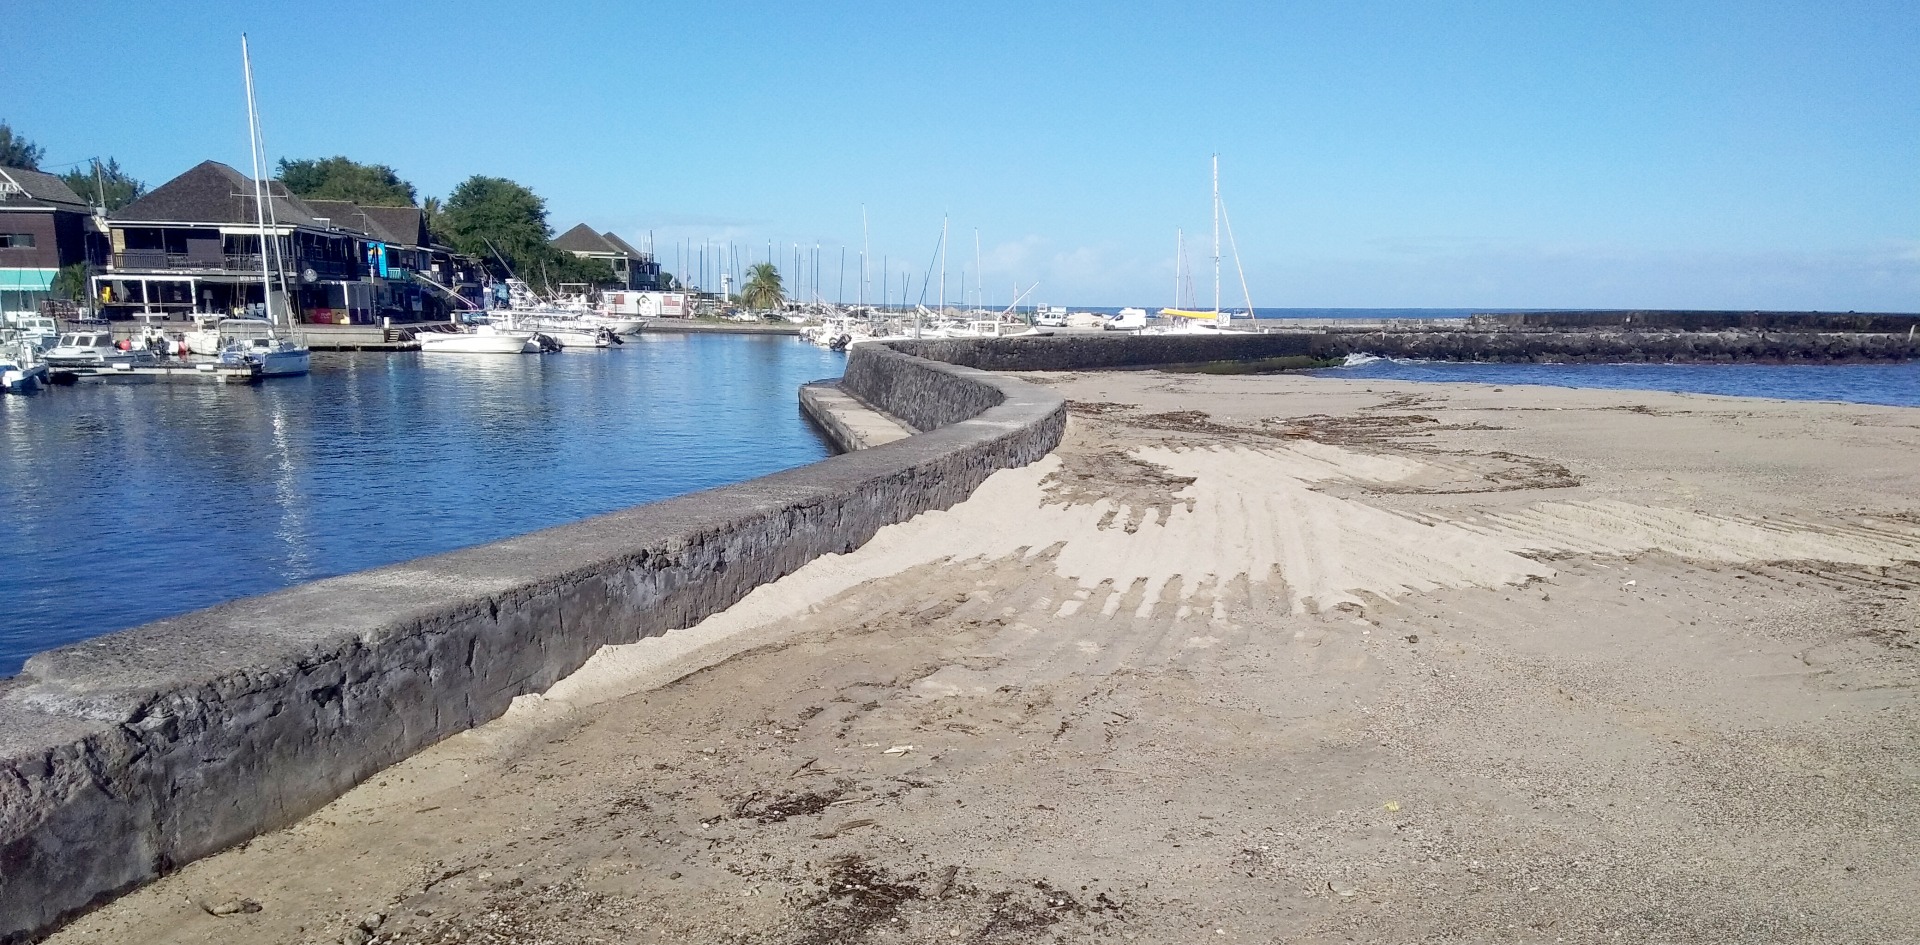 Fin des travaux de désensablement d’entretien du port de Saint-Gilles ce lundi 29 août 2022